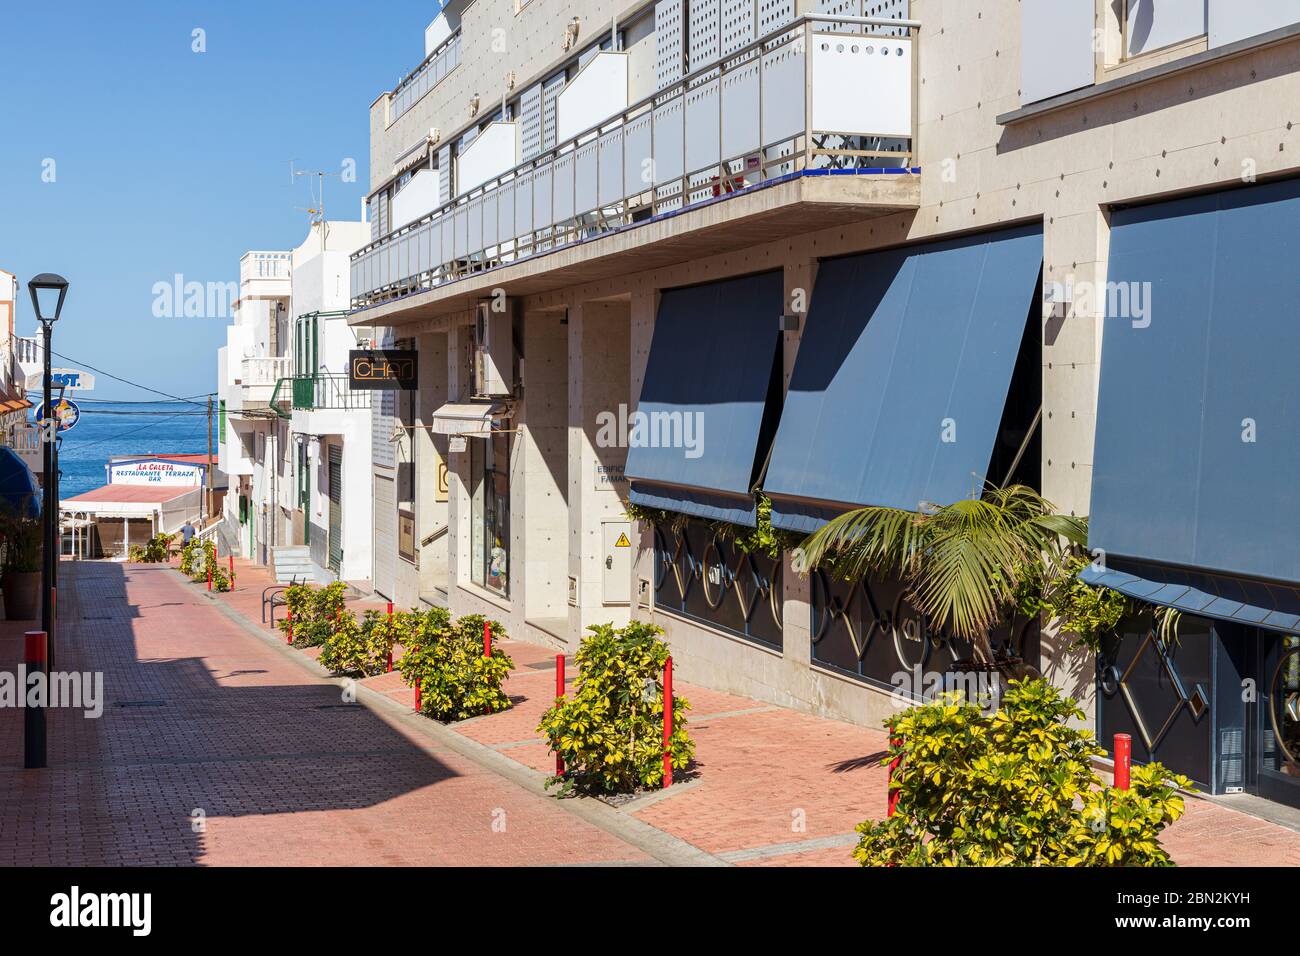 Calles vacías y desiertas en el pueblo de la Caleta durante el cierre covid 19, Costa Adeje, Tenerife, Islas Canarias, España Foto de stock